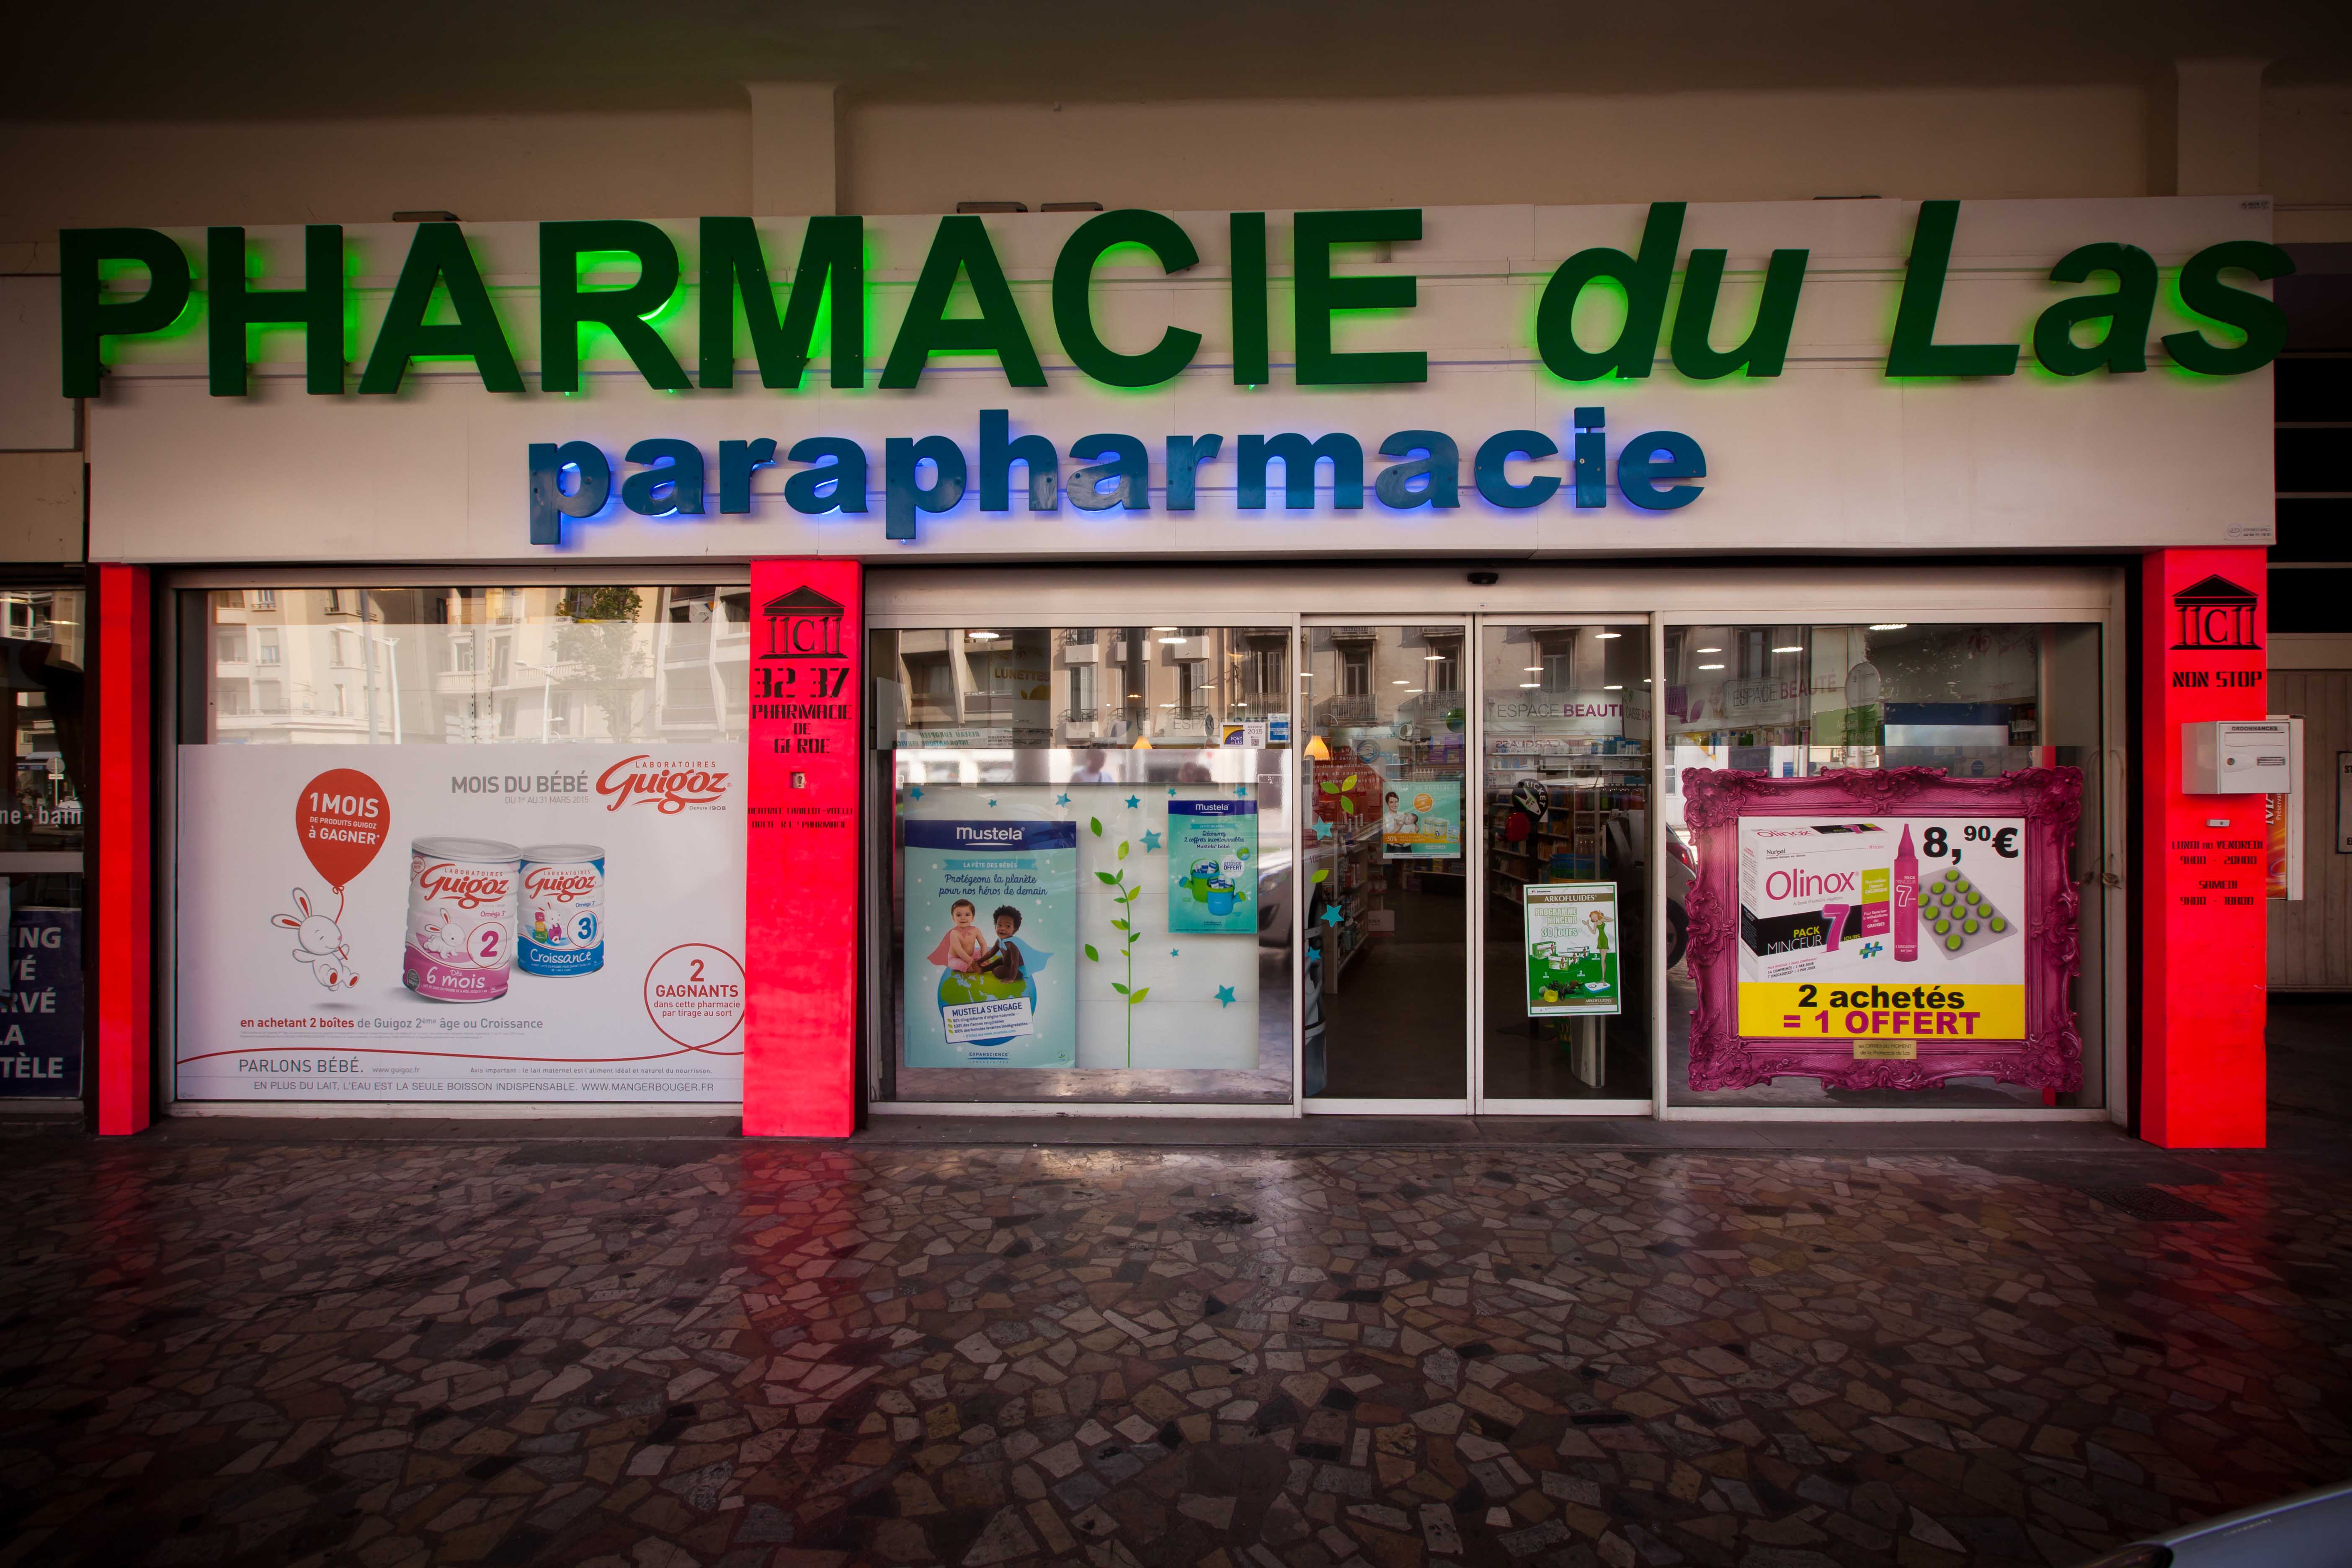 Pharmacie du Las